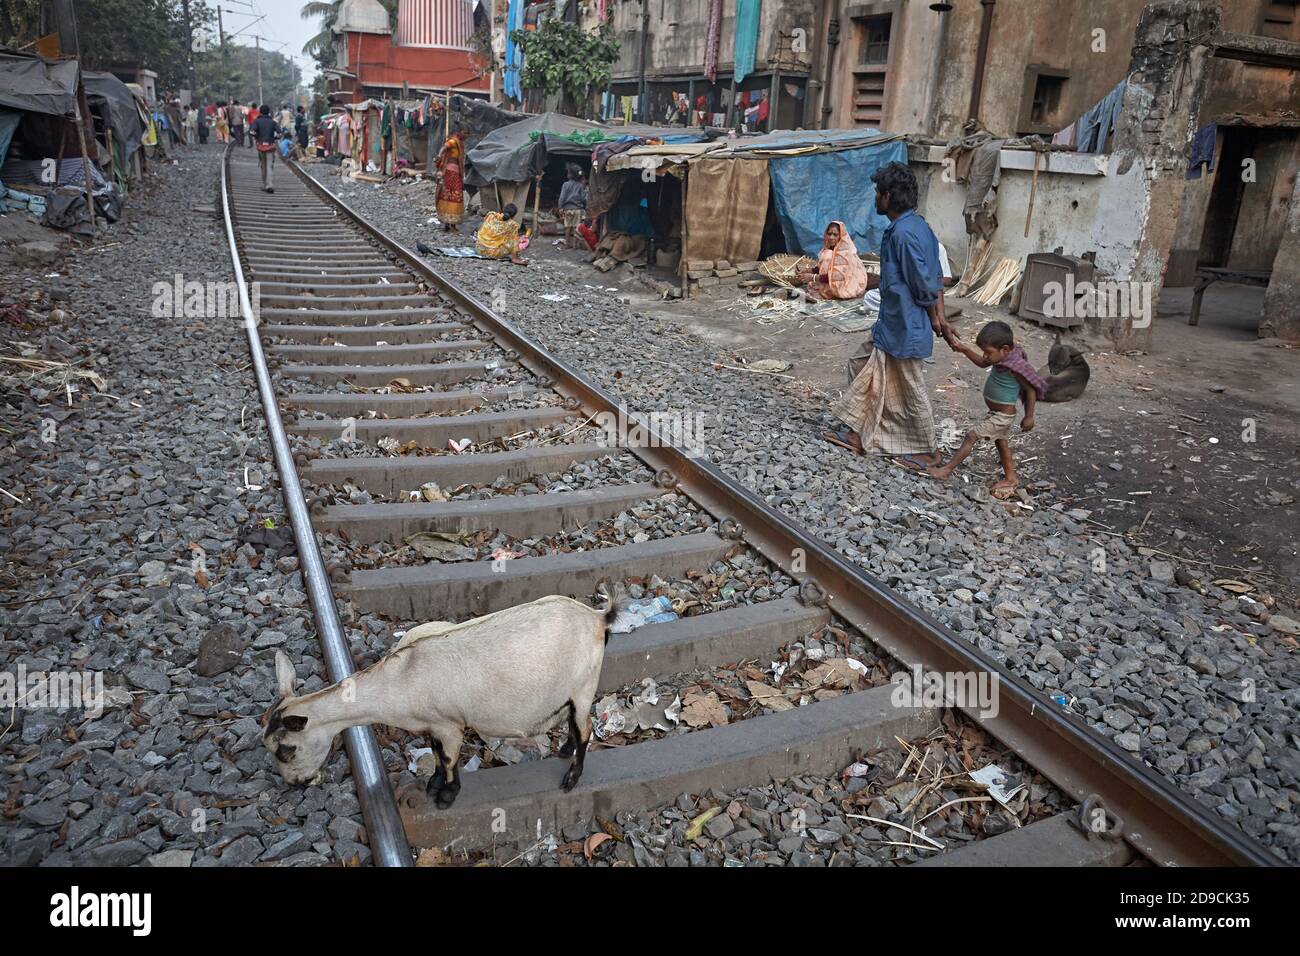 Kolkata, India, January 2008. Huts in a slum built next to the train tracks. Stock Photo